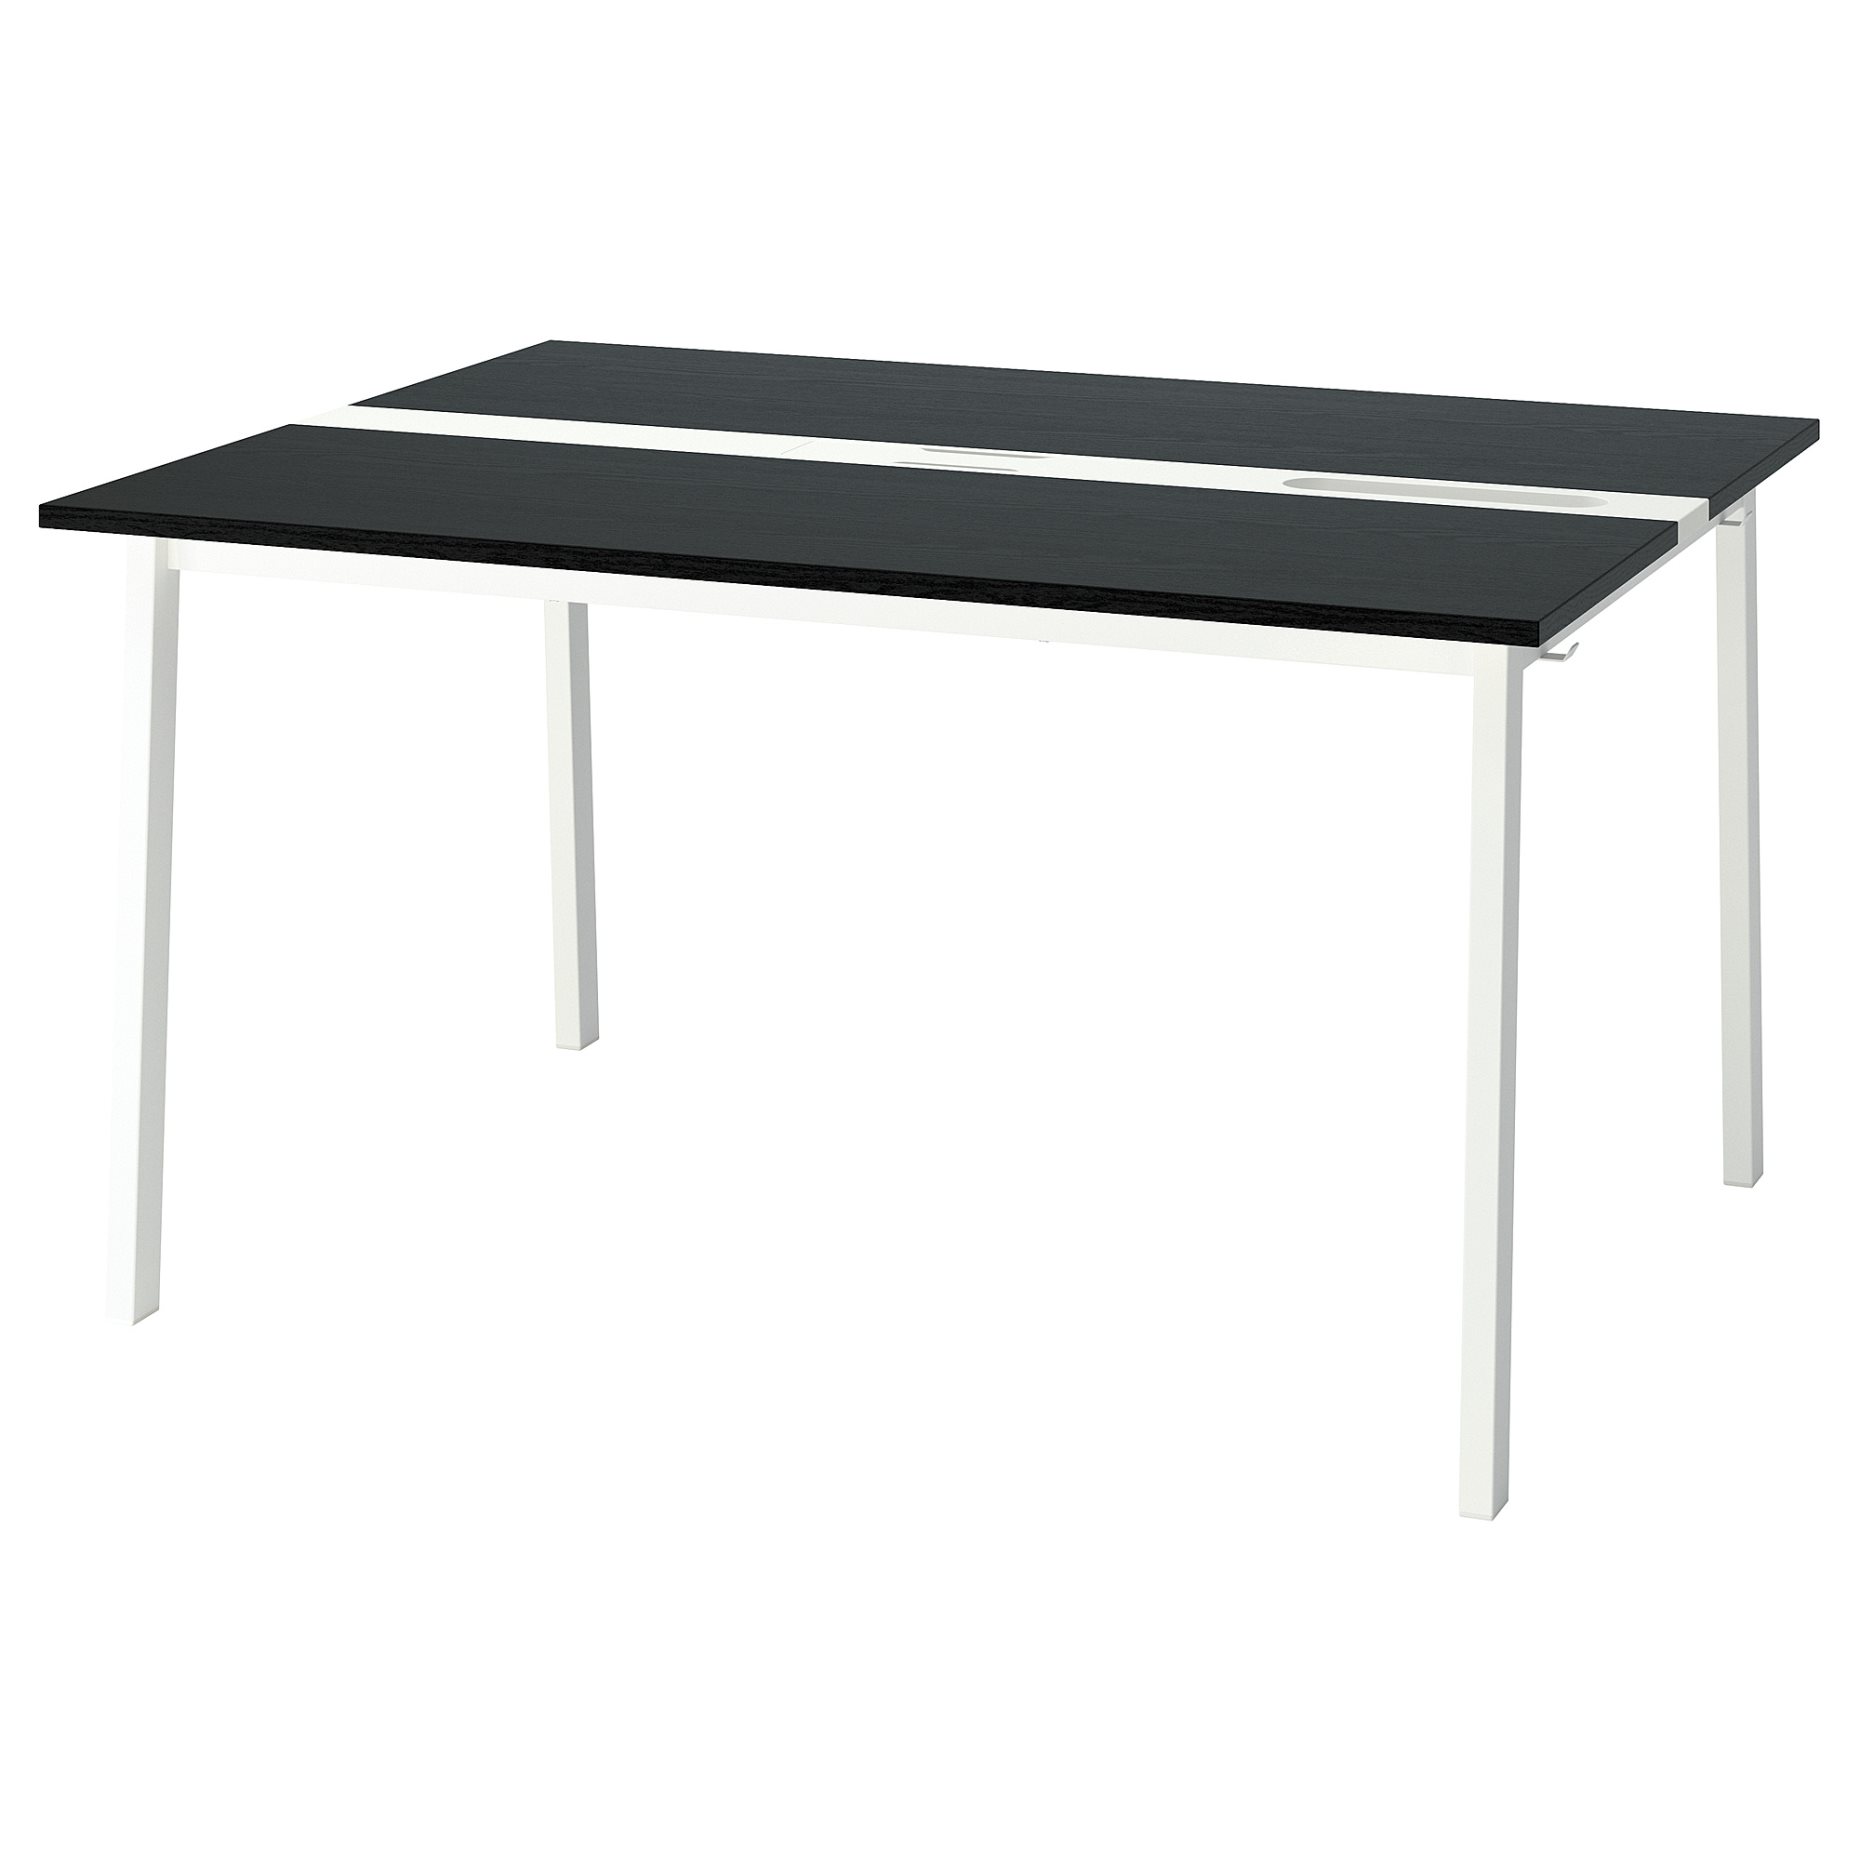 MITTZON, table top, 140x48 cm, 405.277.88